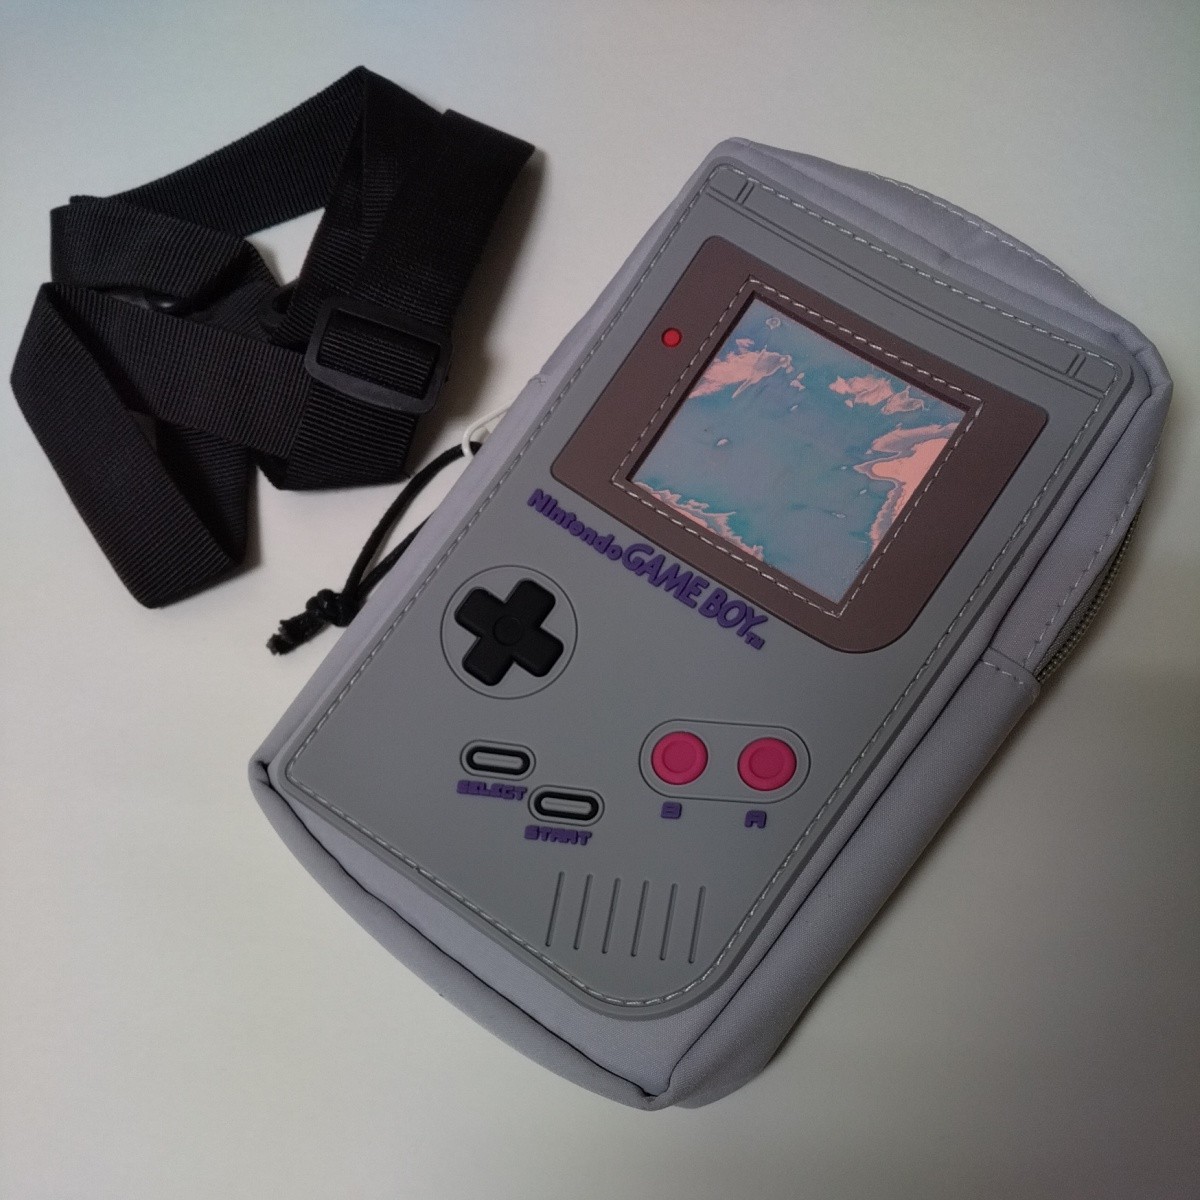 未使用品 Nintendo GAME BOY ショルダーバッグ 肩がけカバン サコッシュ 任天堂 初代 ゲームボーイ 本体デザイン ライトグレー かばん 鞄